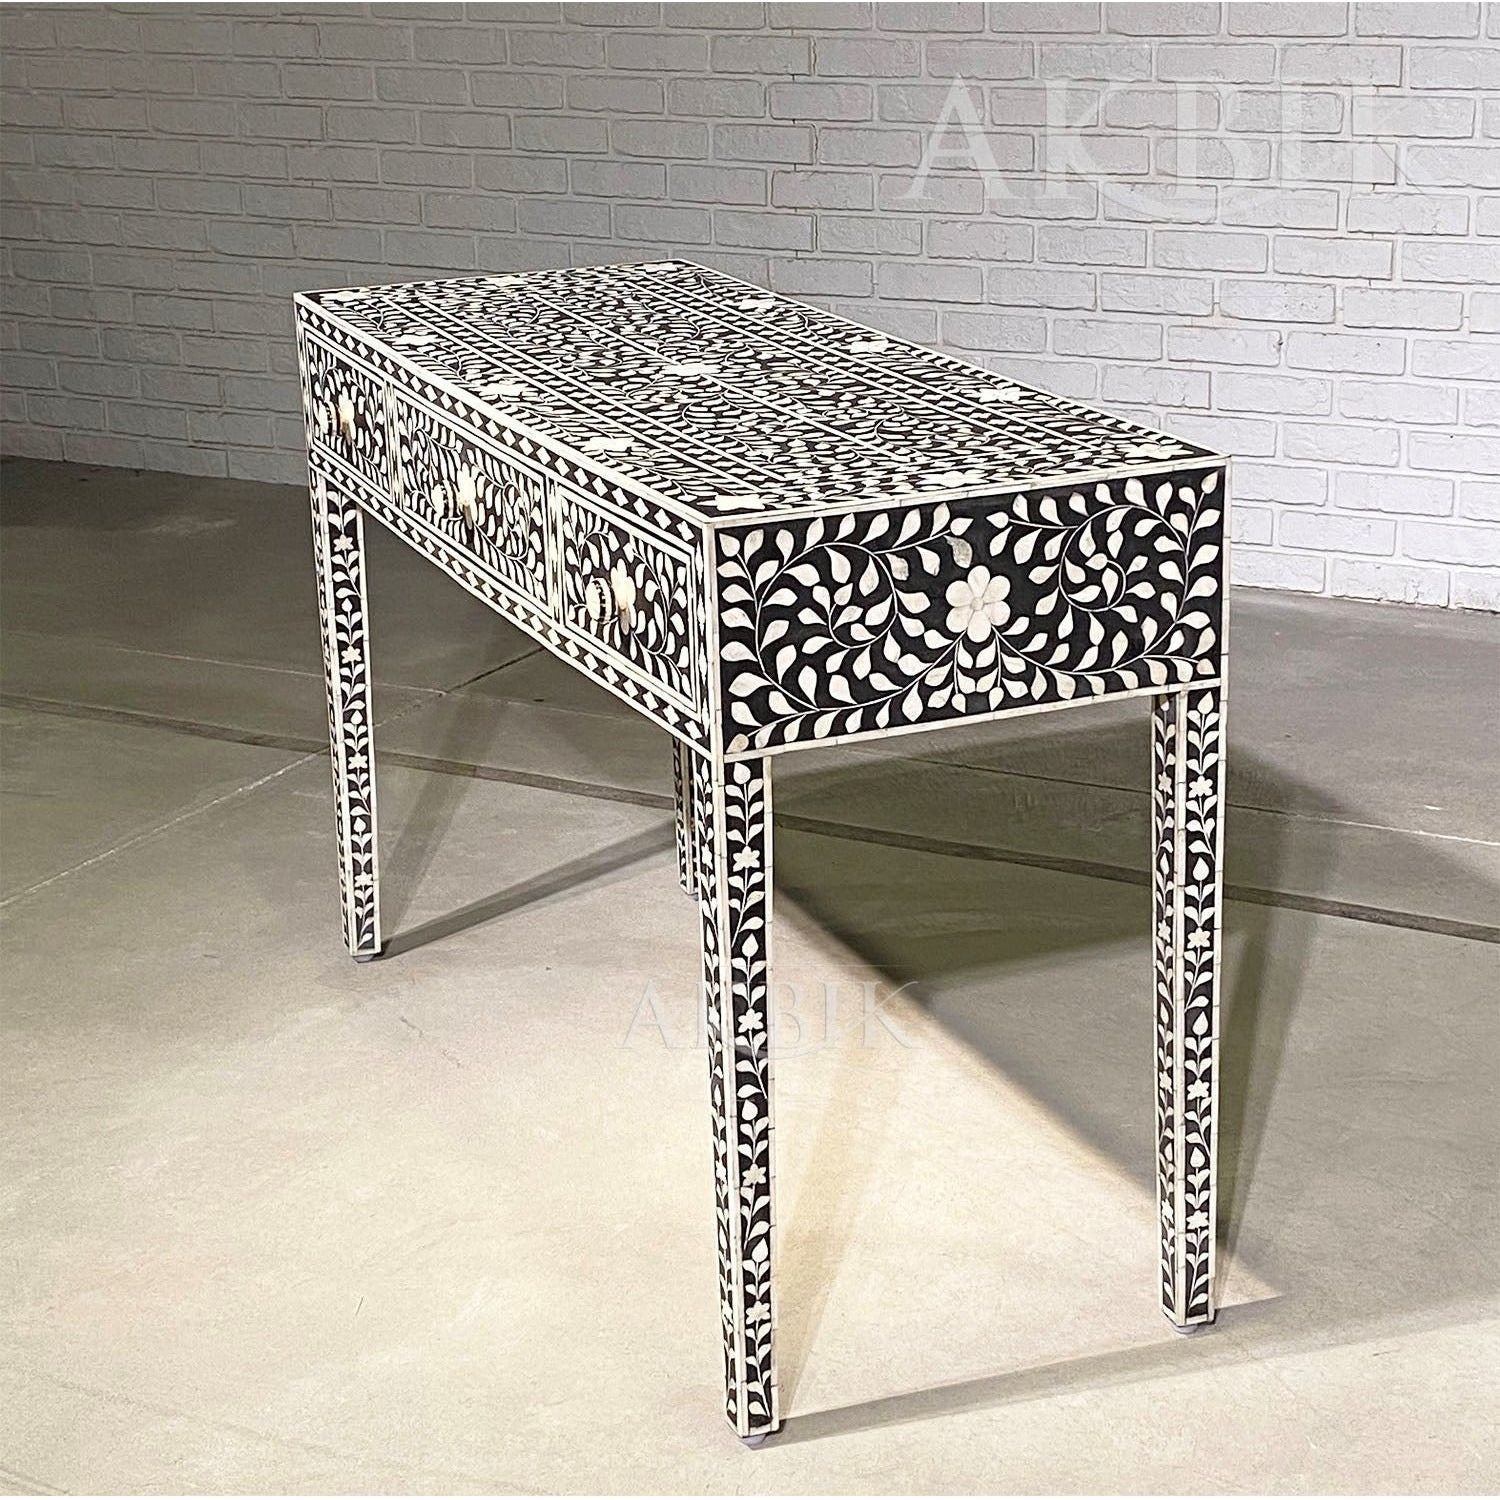 CAPE OF GOOD HOPE CONSOLE - AKBIK Furniture & Design